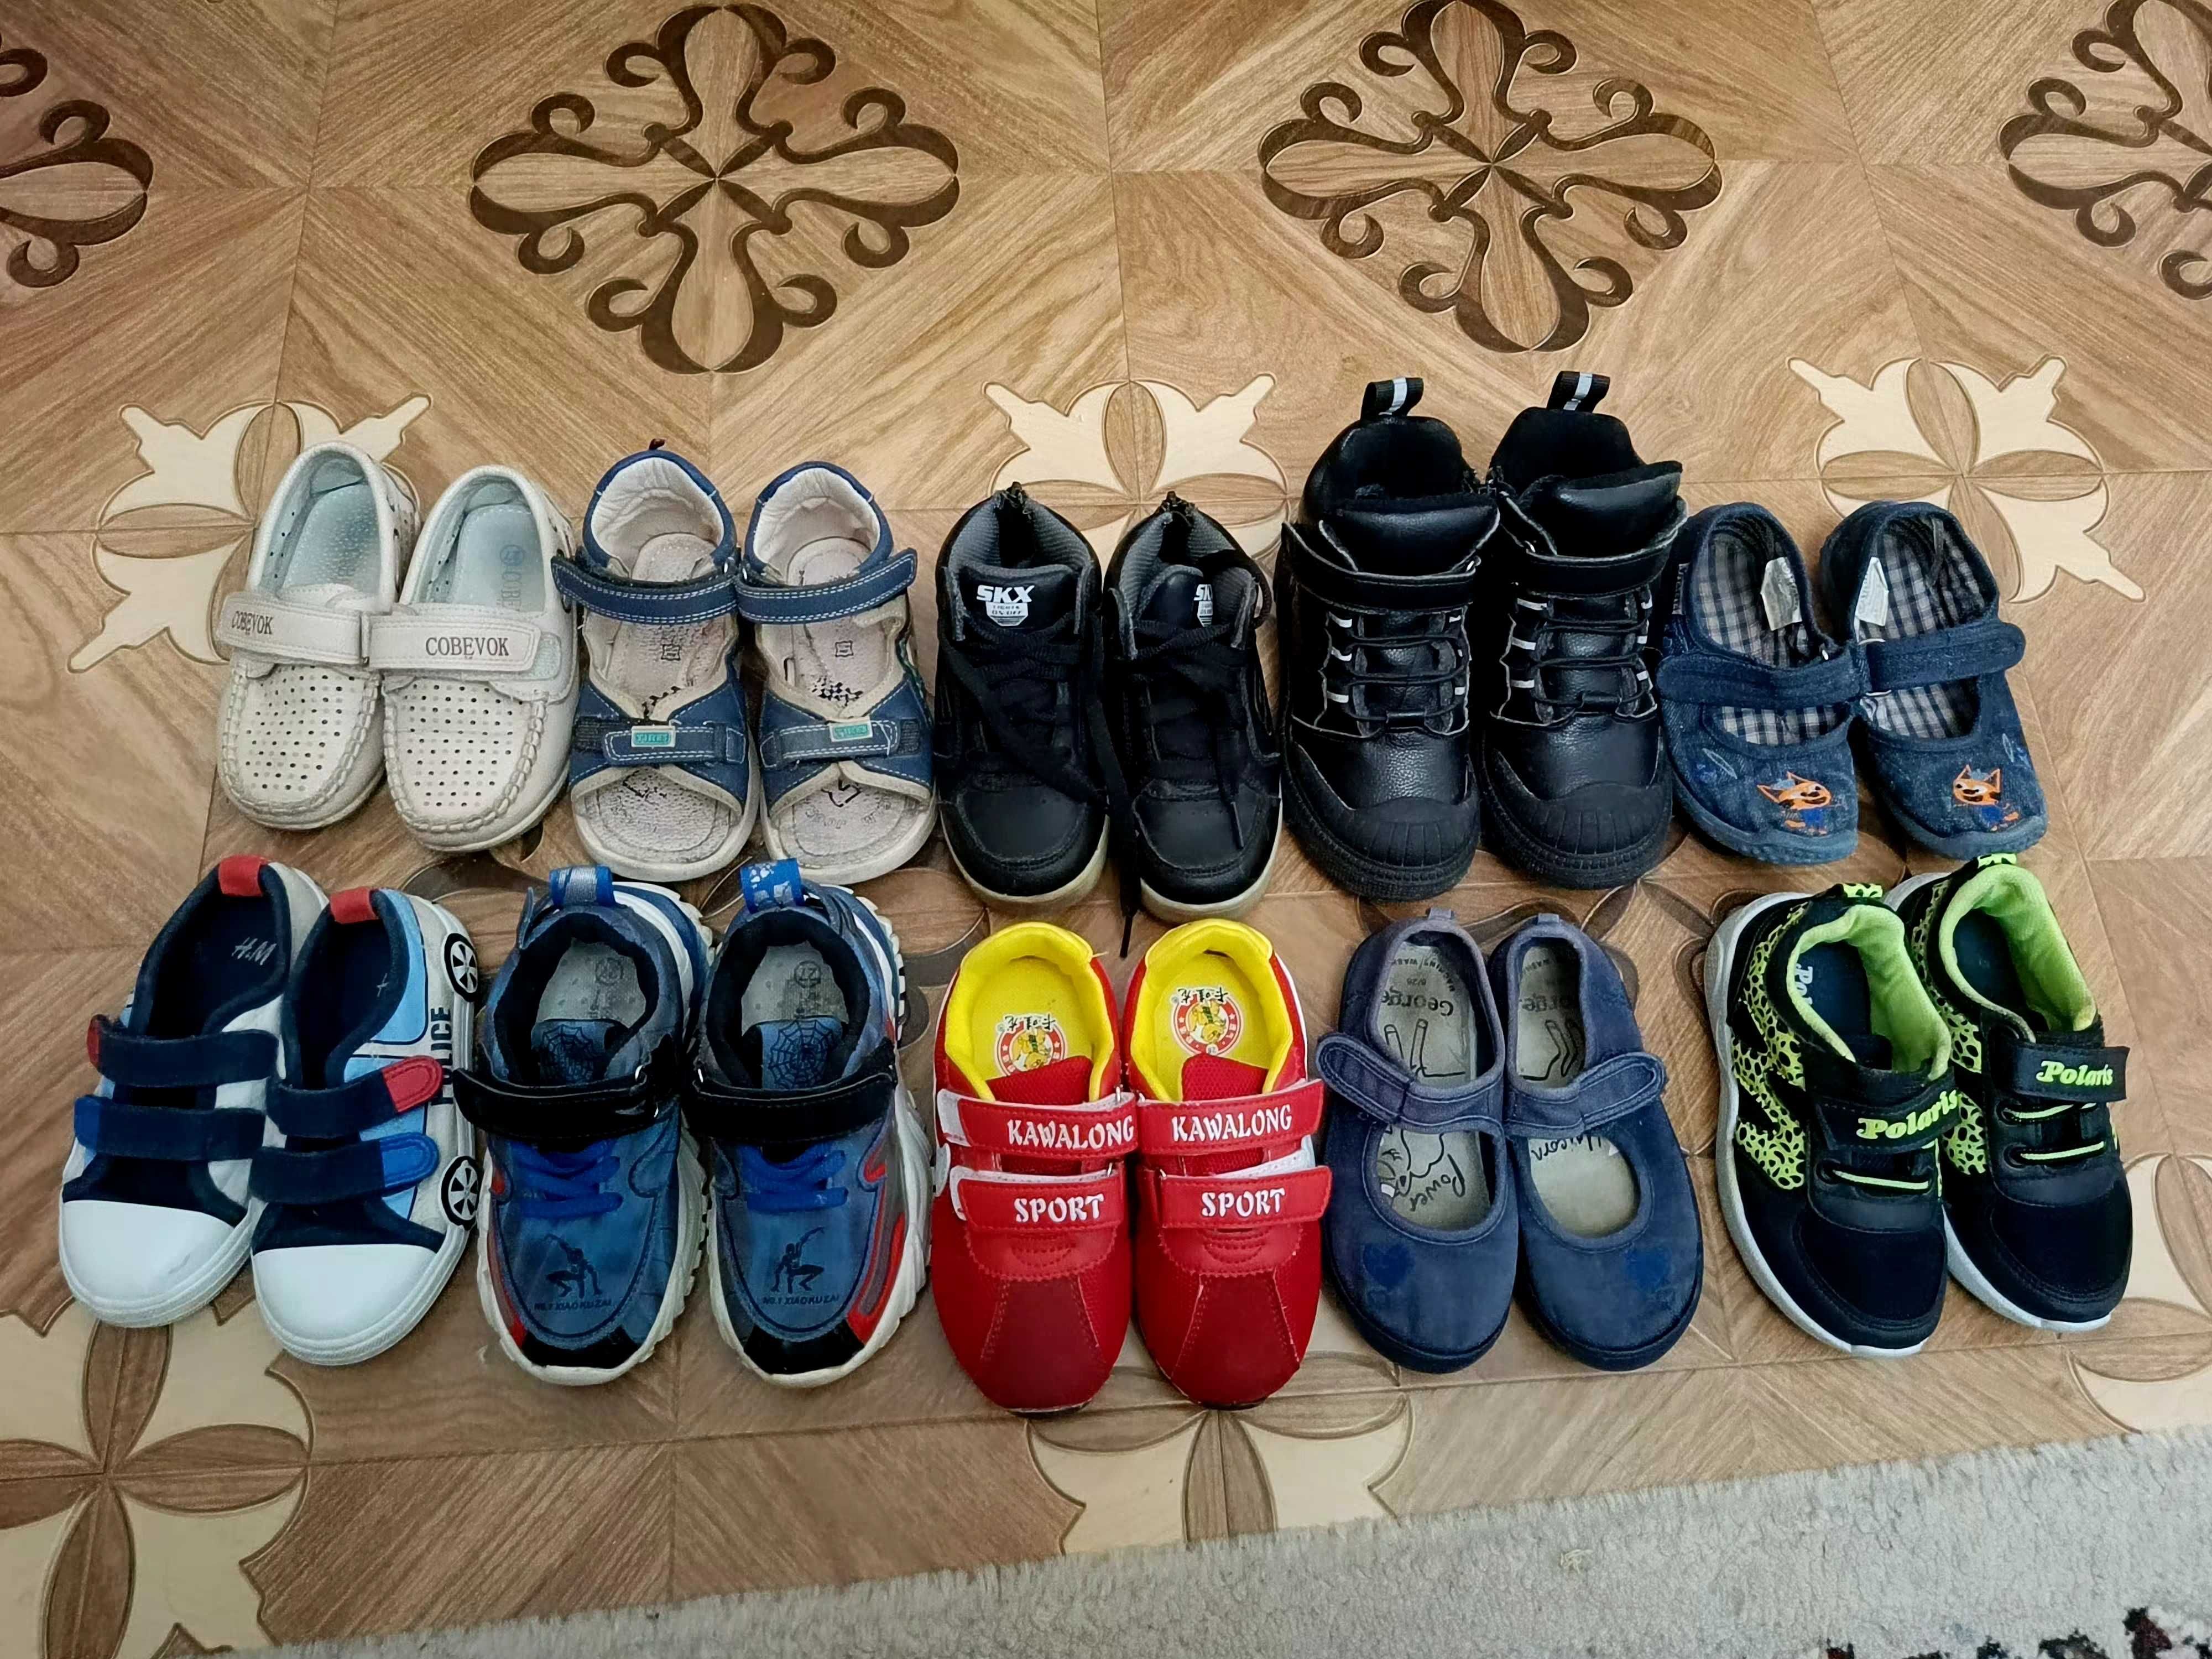 Обувь для мальчика, набор от 26-28 размера.